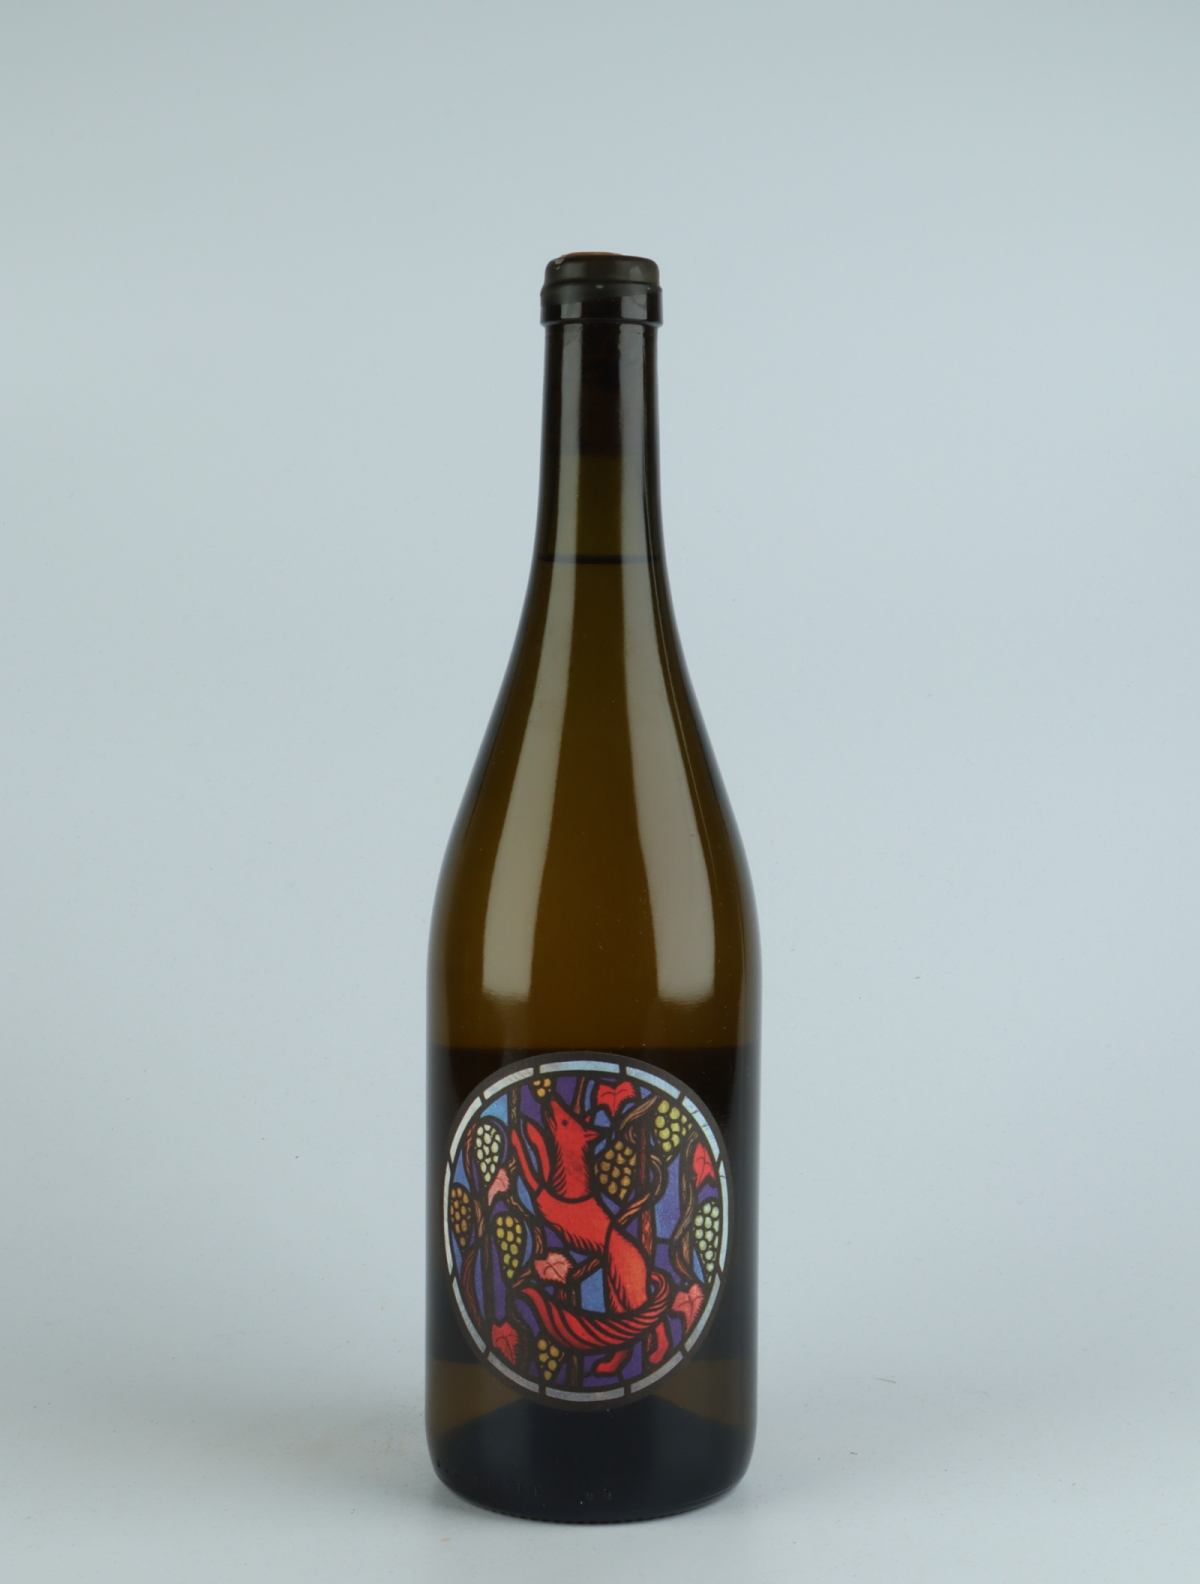 A bottle 2019 Riesling White wine from Julien Renard, Mosel in Germany